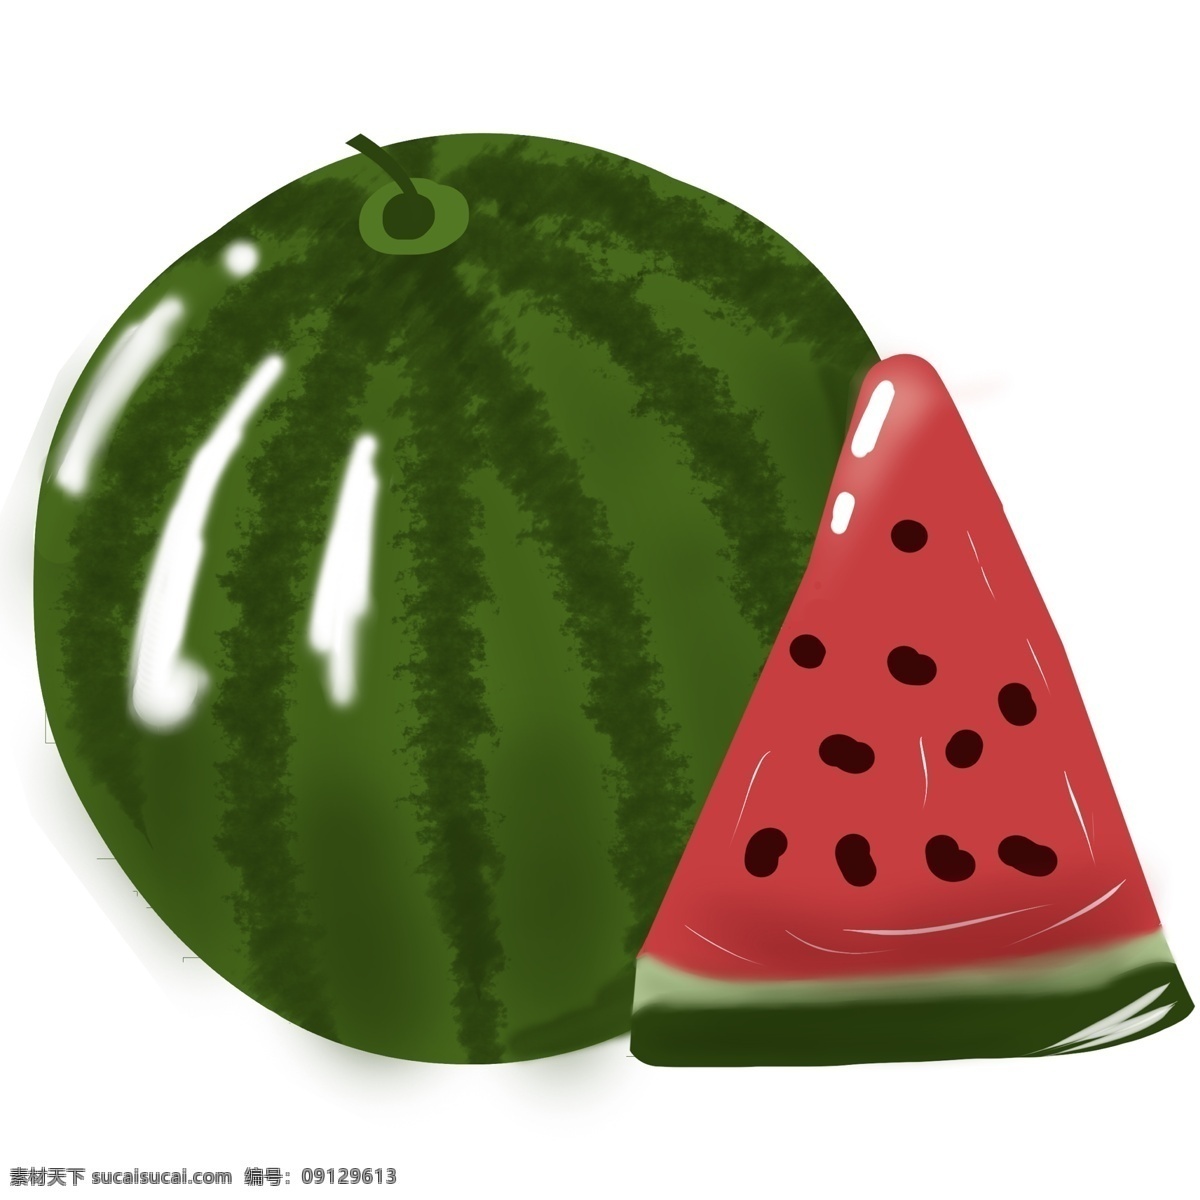 切开 西瓜 水果 花纹 瓜 切西瓜 水彩 手绘 系列 红色 黑色 绿色 白色 浅绿色 沙瓤 脆甜 喜欢 夏天